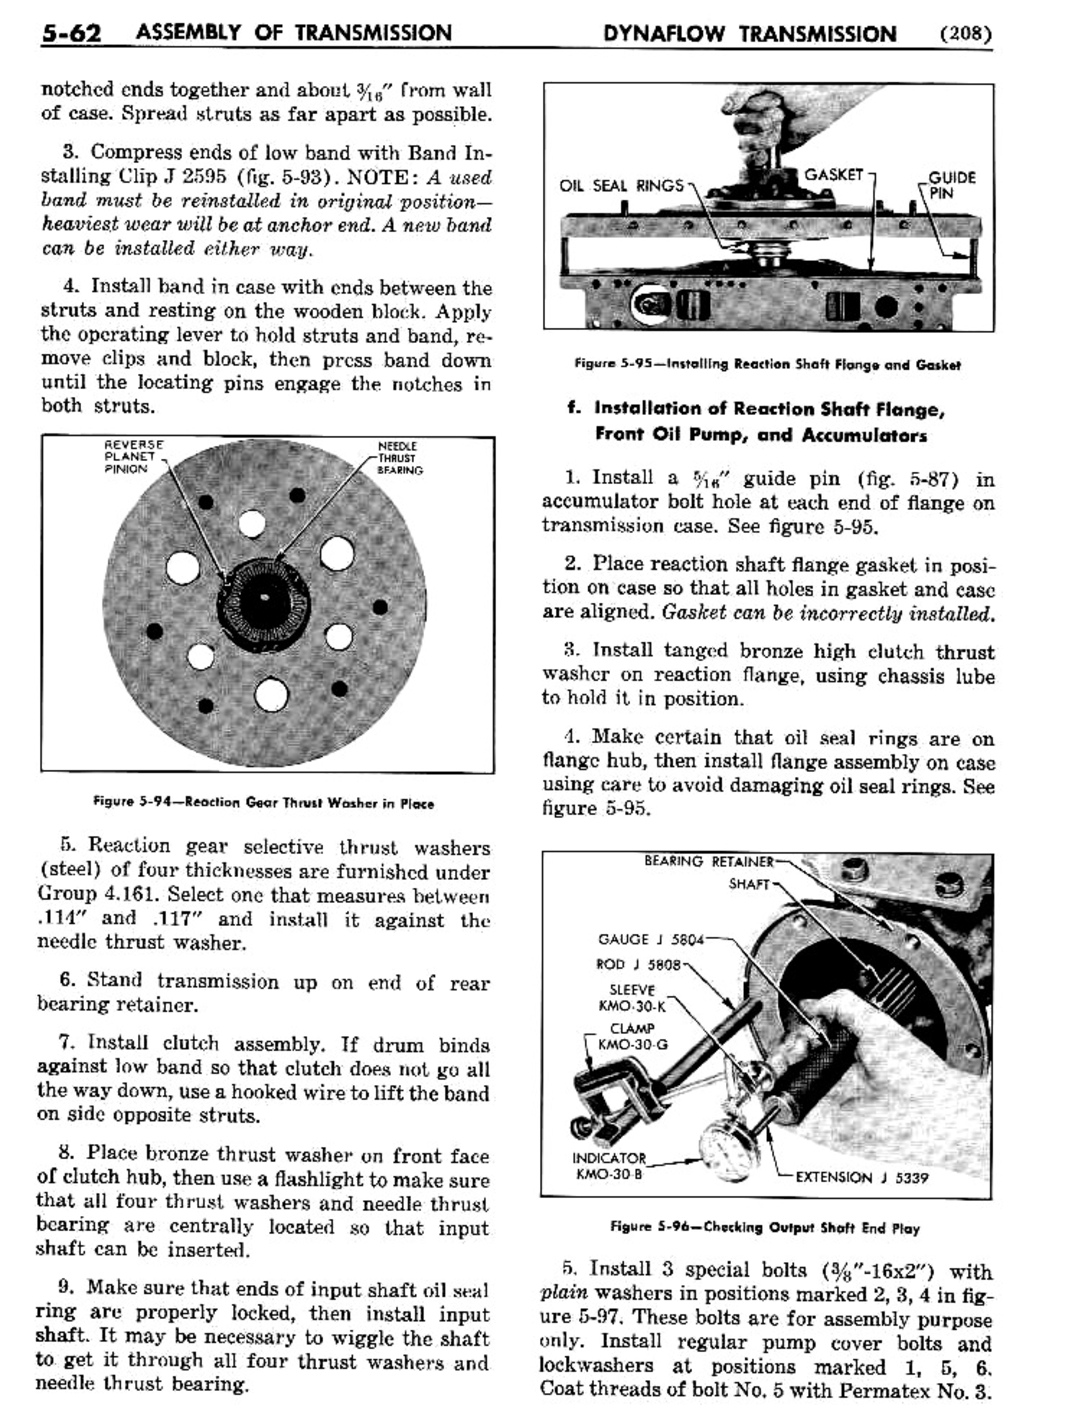 n_06 1956 Buick Shop Manual - Dynaflow-062-062.jpg